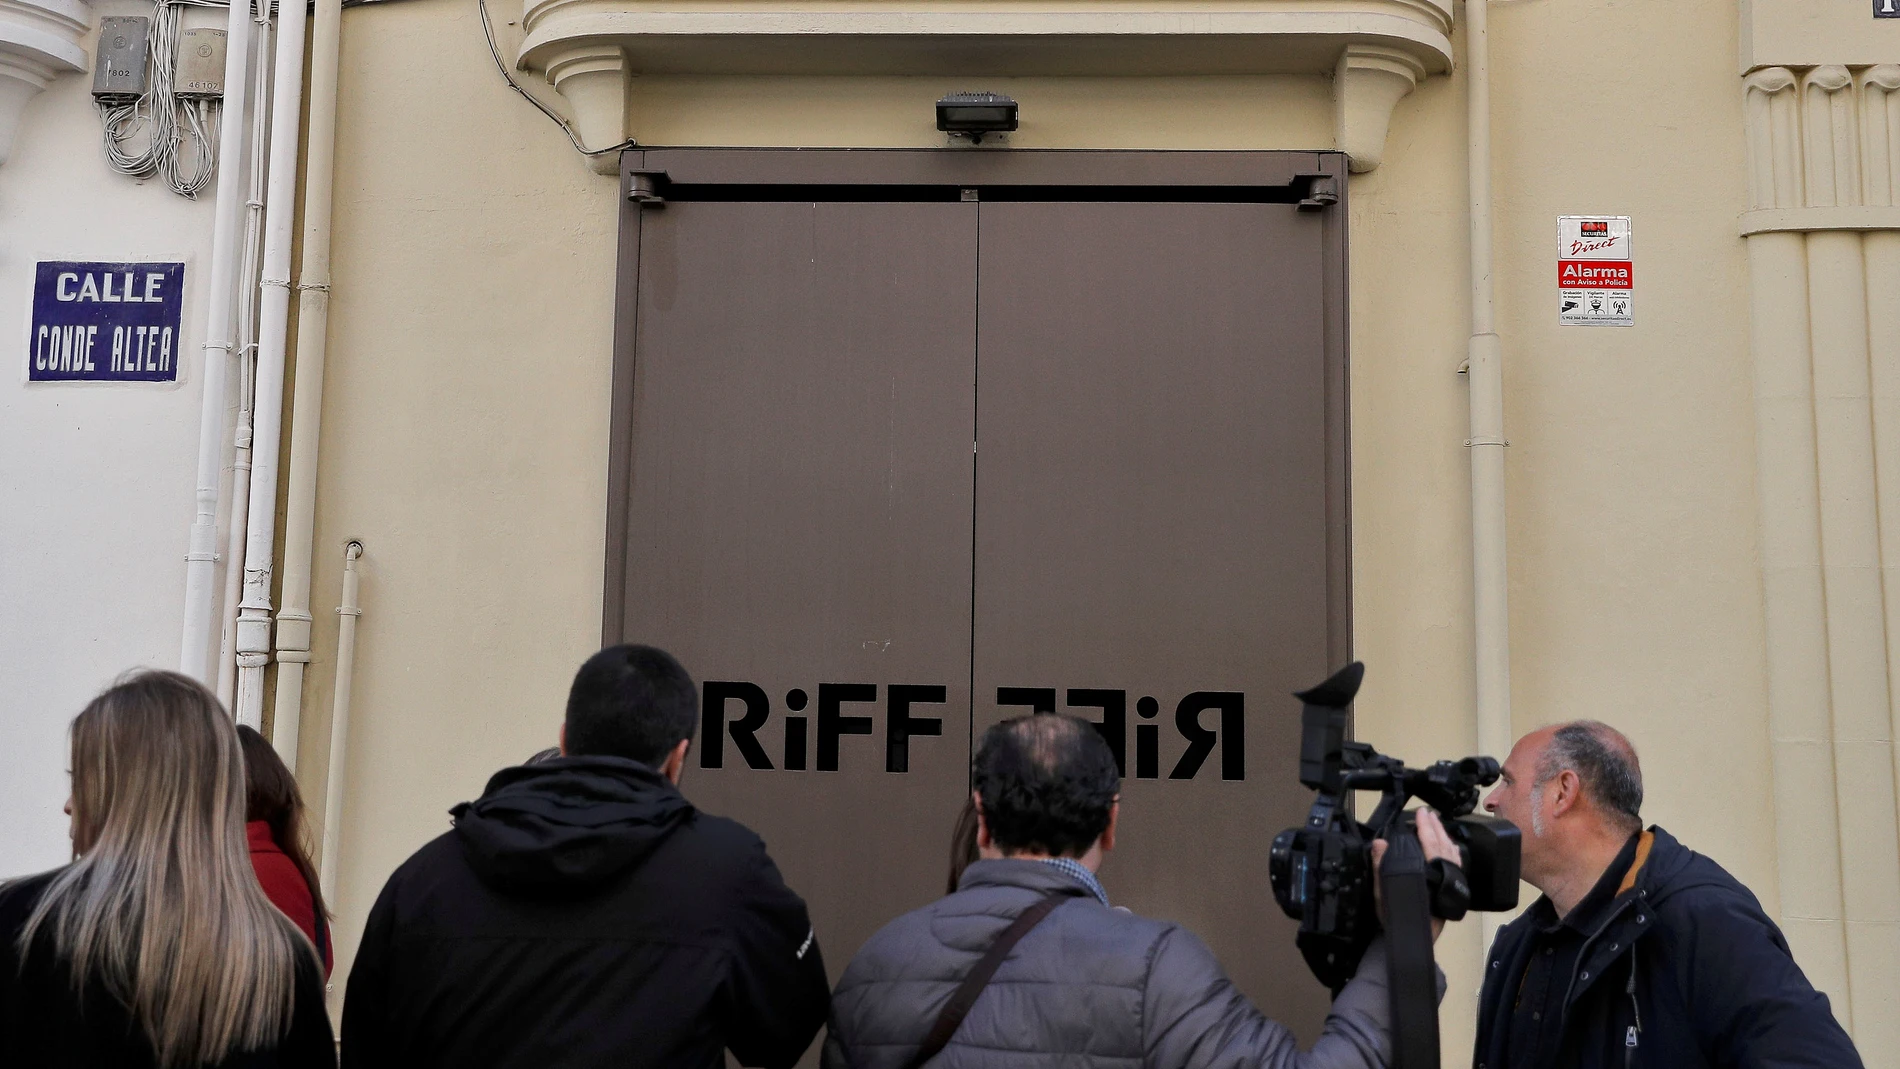 Los medios de comunicación esperan a las puertas del restaurante RiFF de València.